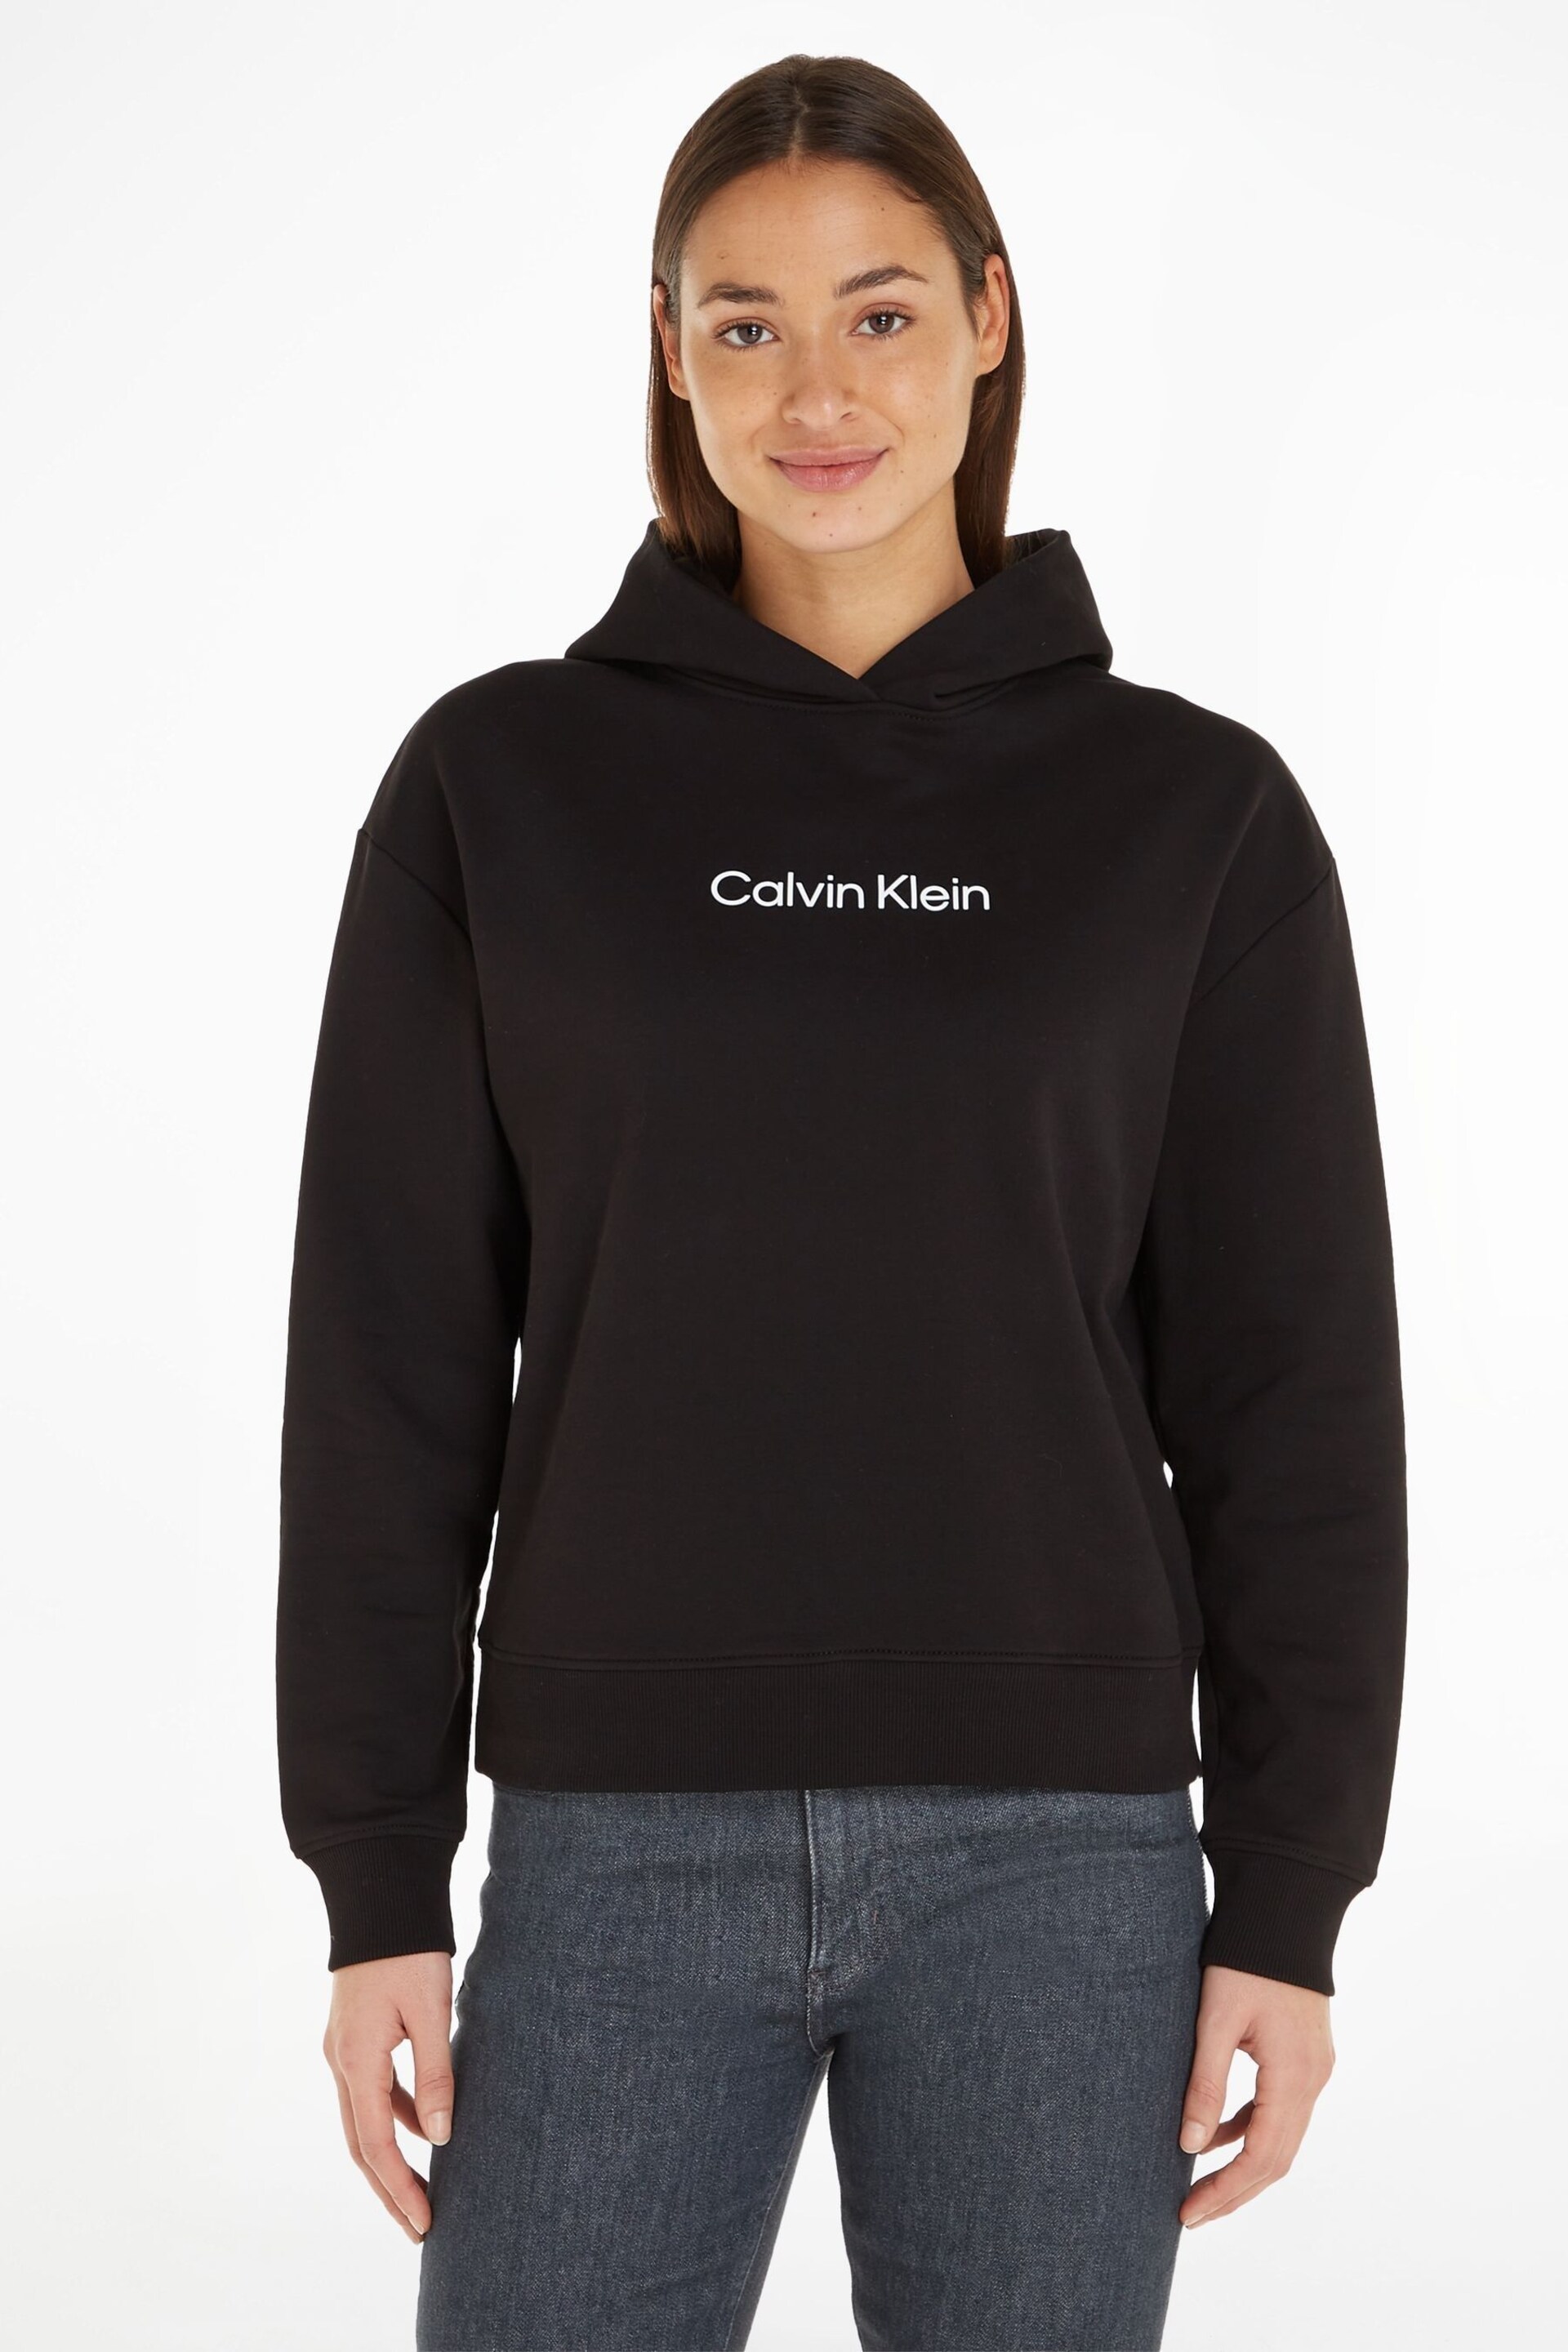 Calvin Klein Black Hero Logo Hoodie - Image 1 of 5